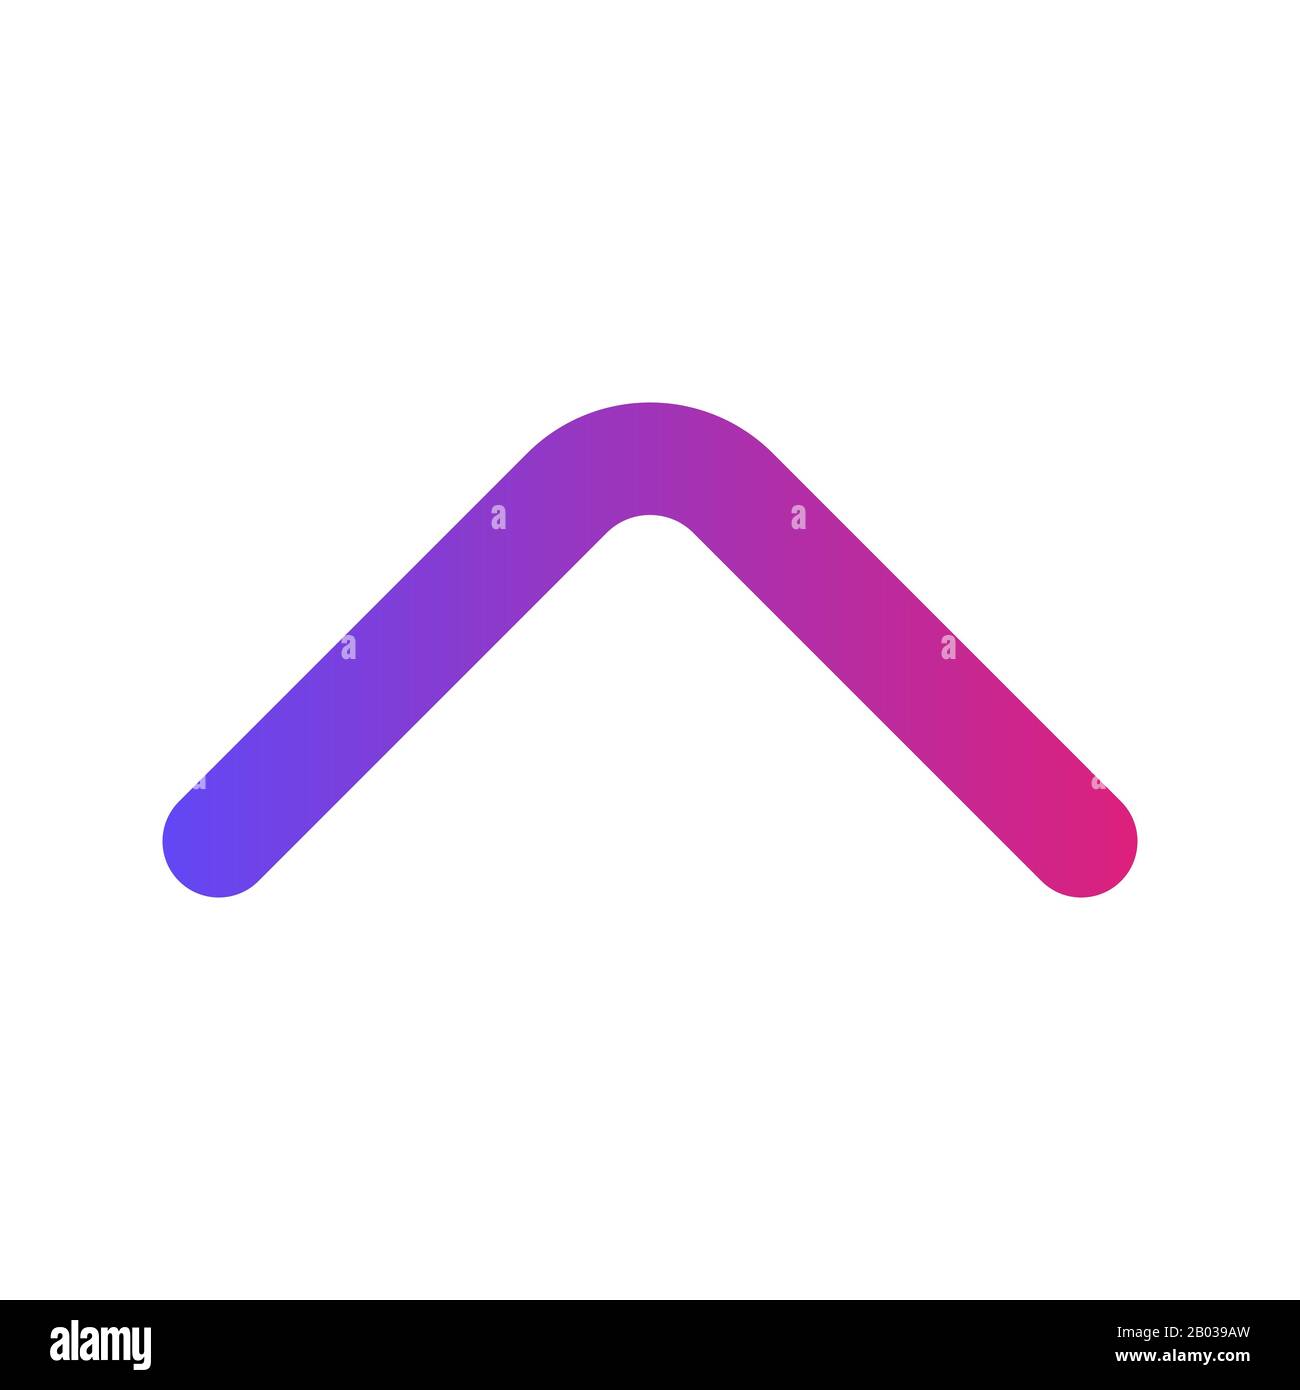 Einfaches UI Glyph Symbol Design Image. Kann auch für die Benutzeroberfläche verwendet werden. Geeignet für mobile Apps, Web-Apps und Printmedien. Stockfoto